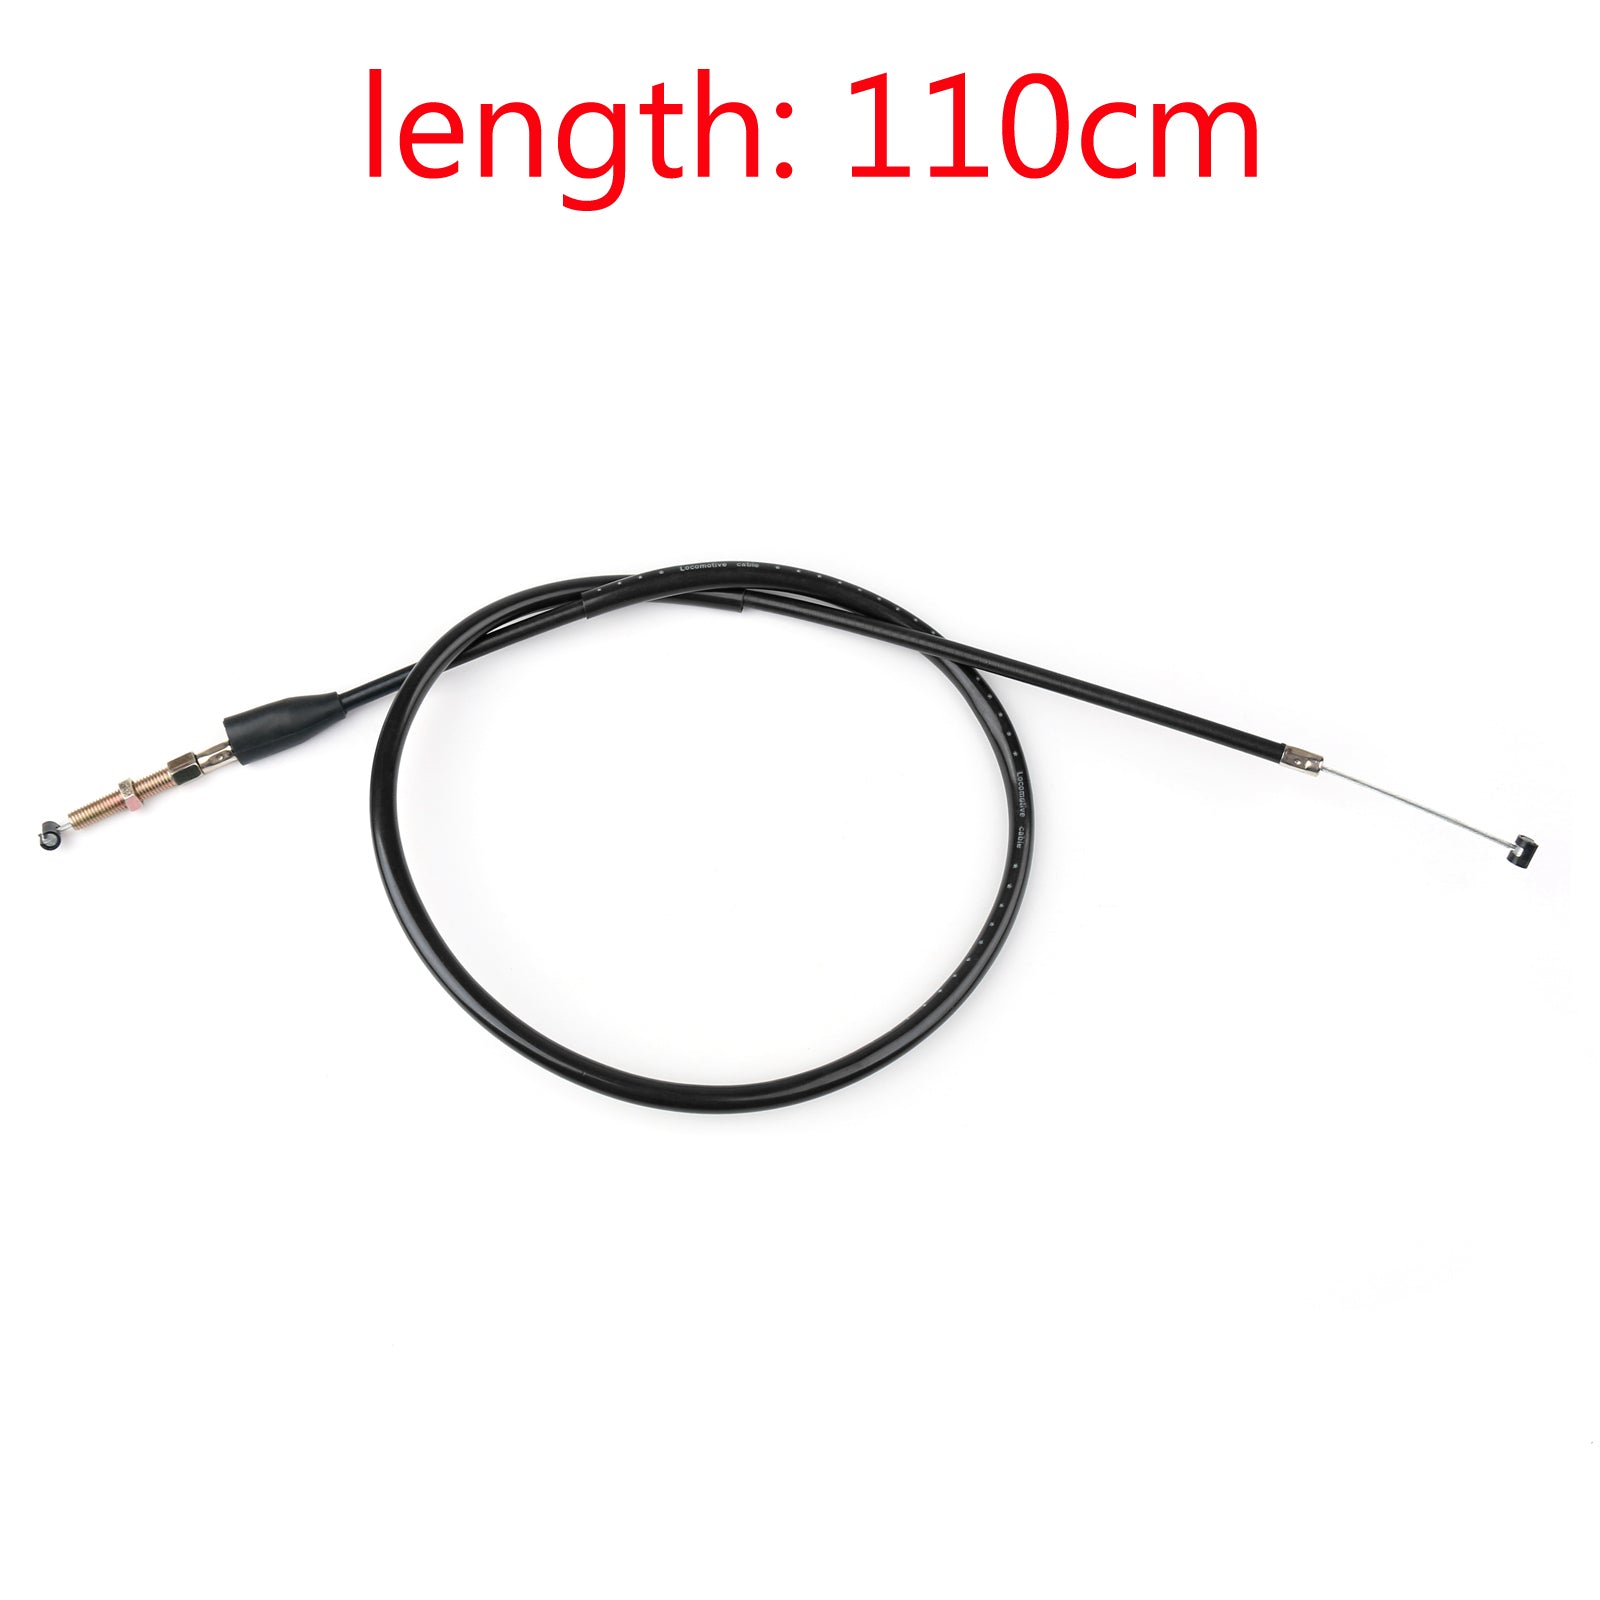 Câble d'embrayage en acier fil 2C0-26335-00-00 pour Yamaha YZF R6 2006-2016 2008 2012 générique